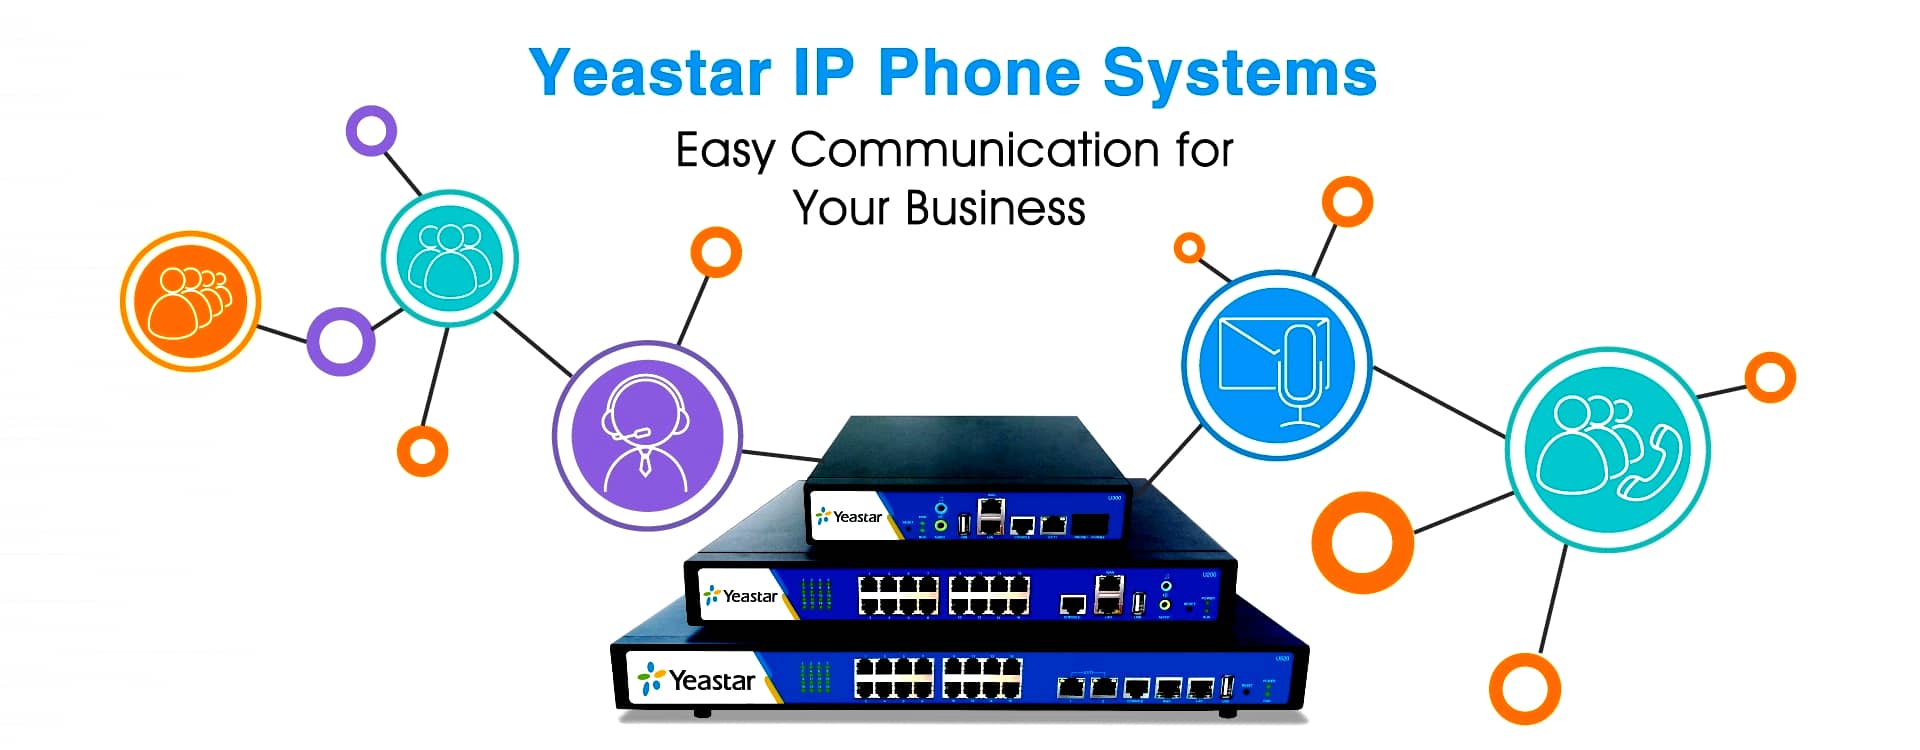 Yeaster-IP-PBX-System-Dubai-slide-2